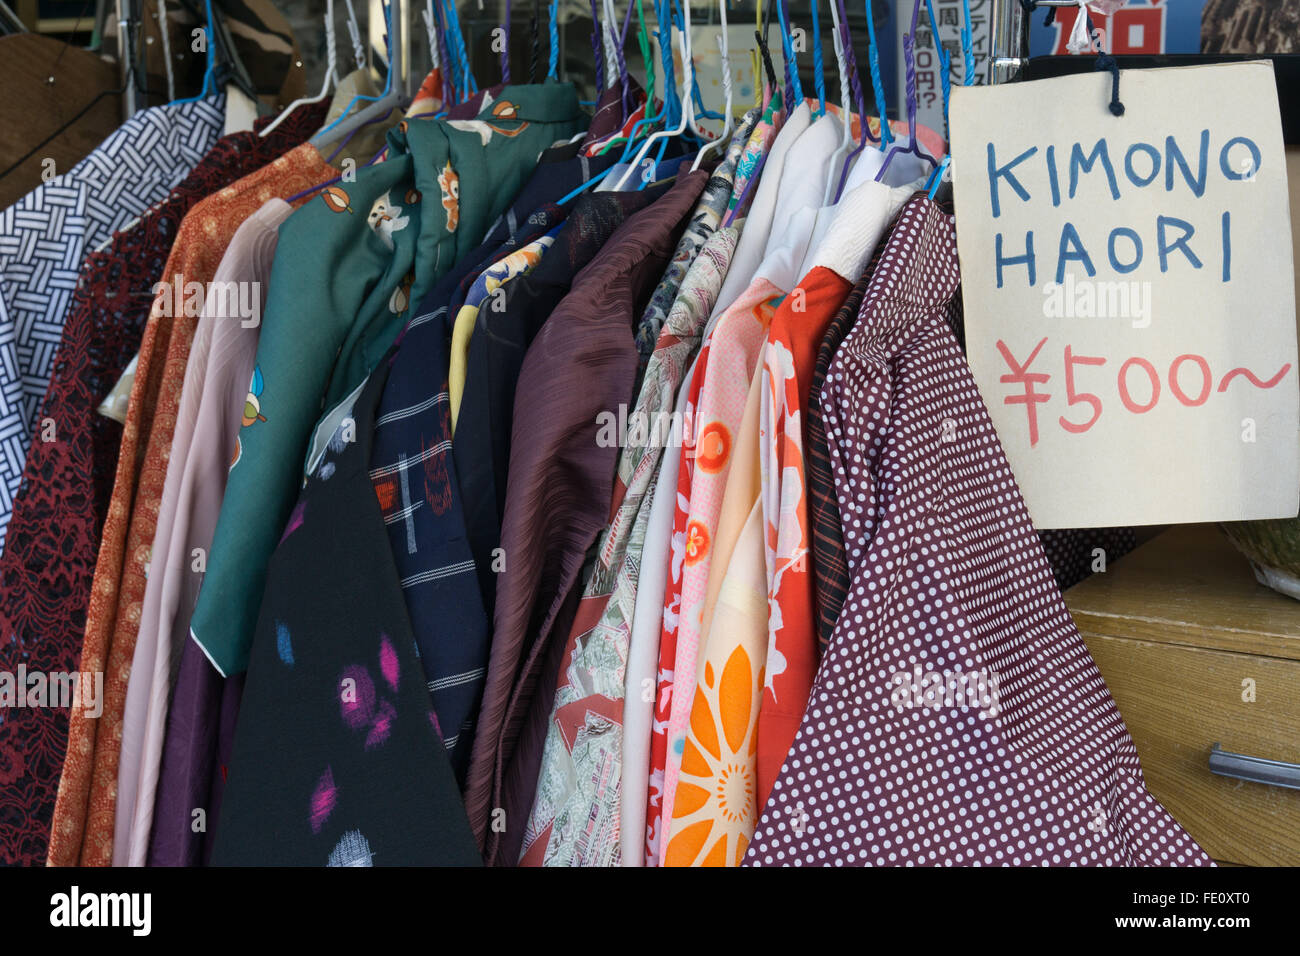 Utilizzate il kimono e haori spazzatura negozio parsimonia store in Giappone Foto Stock